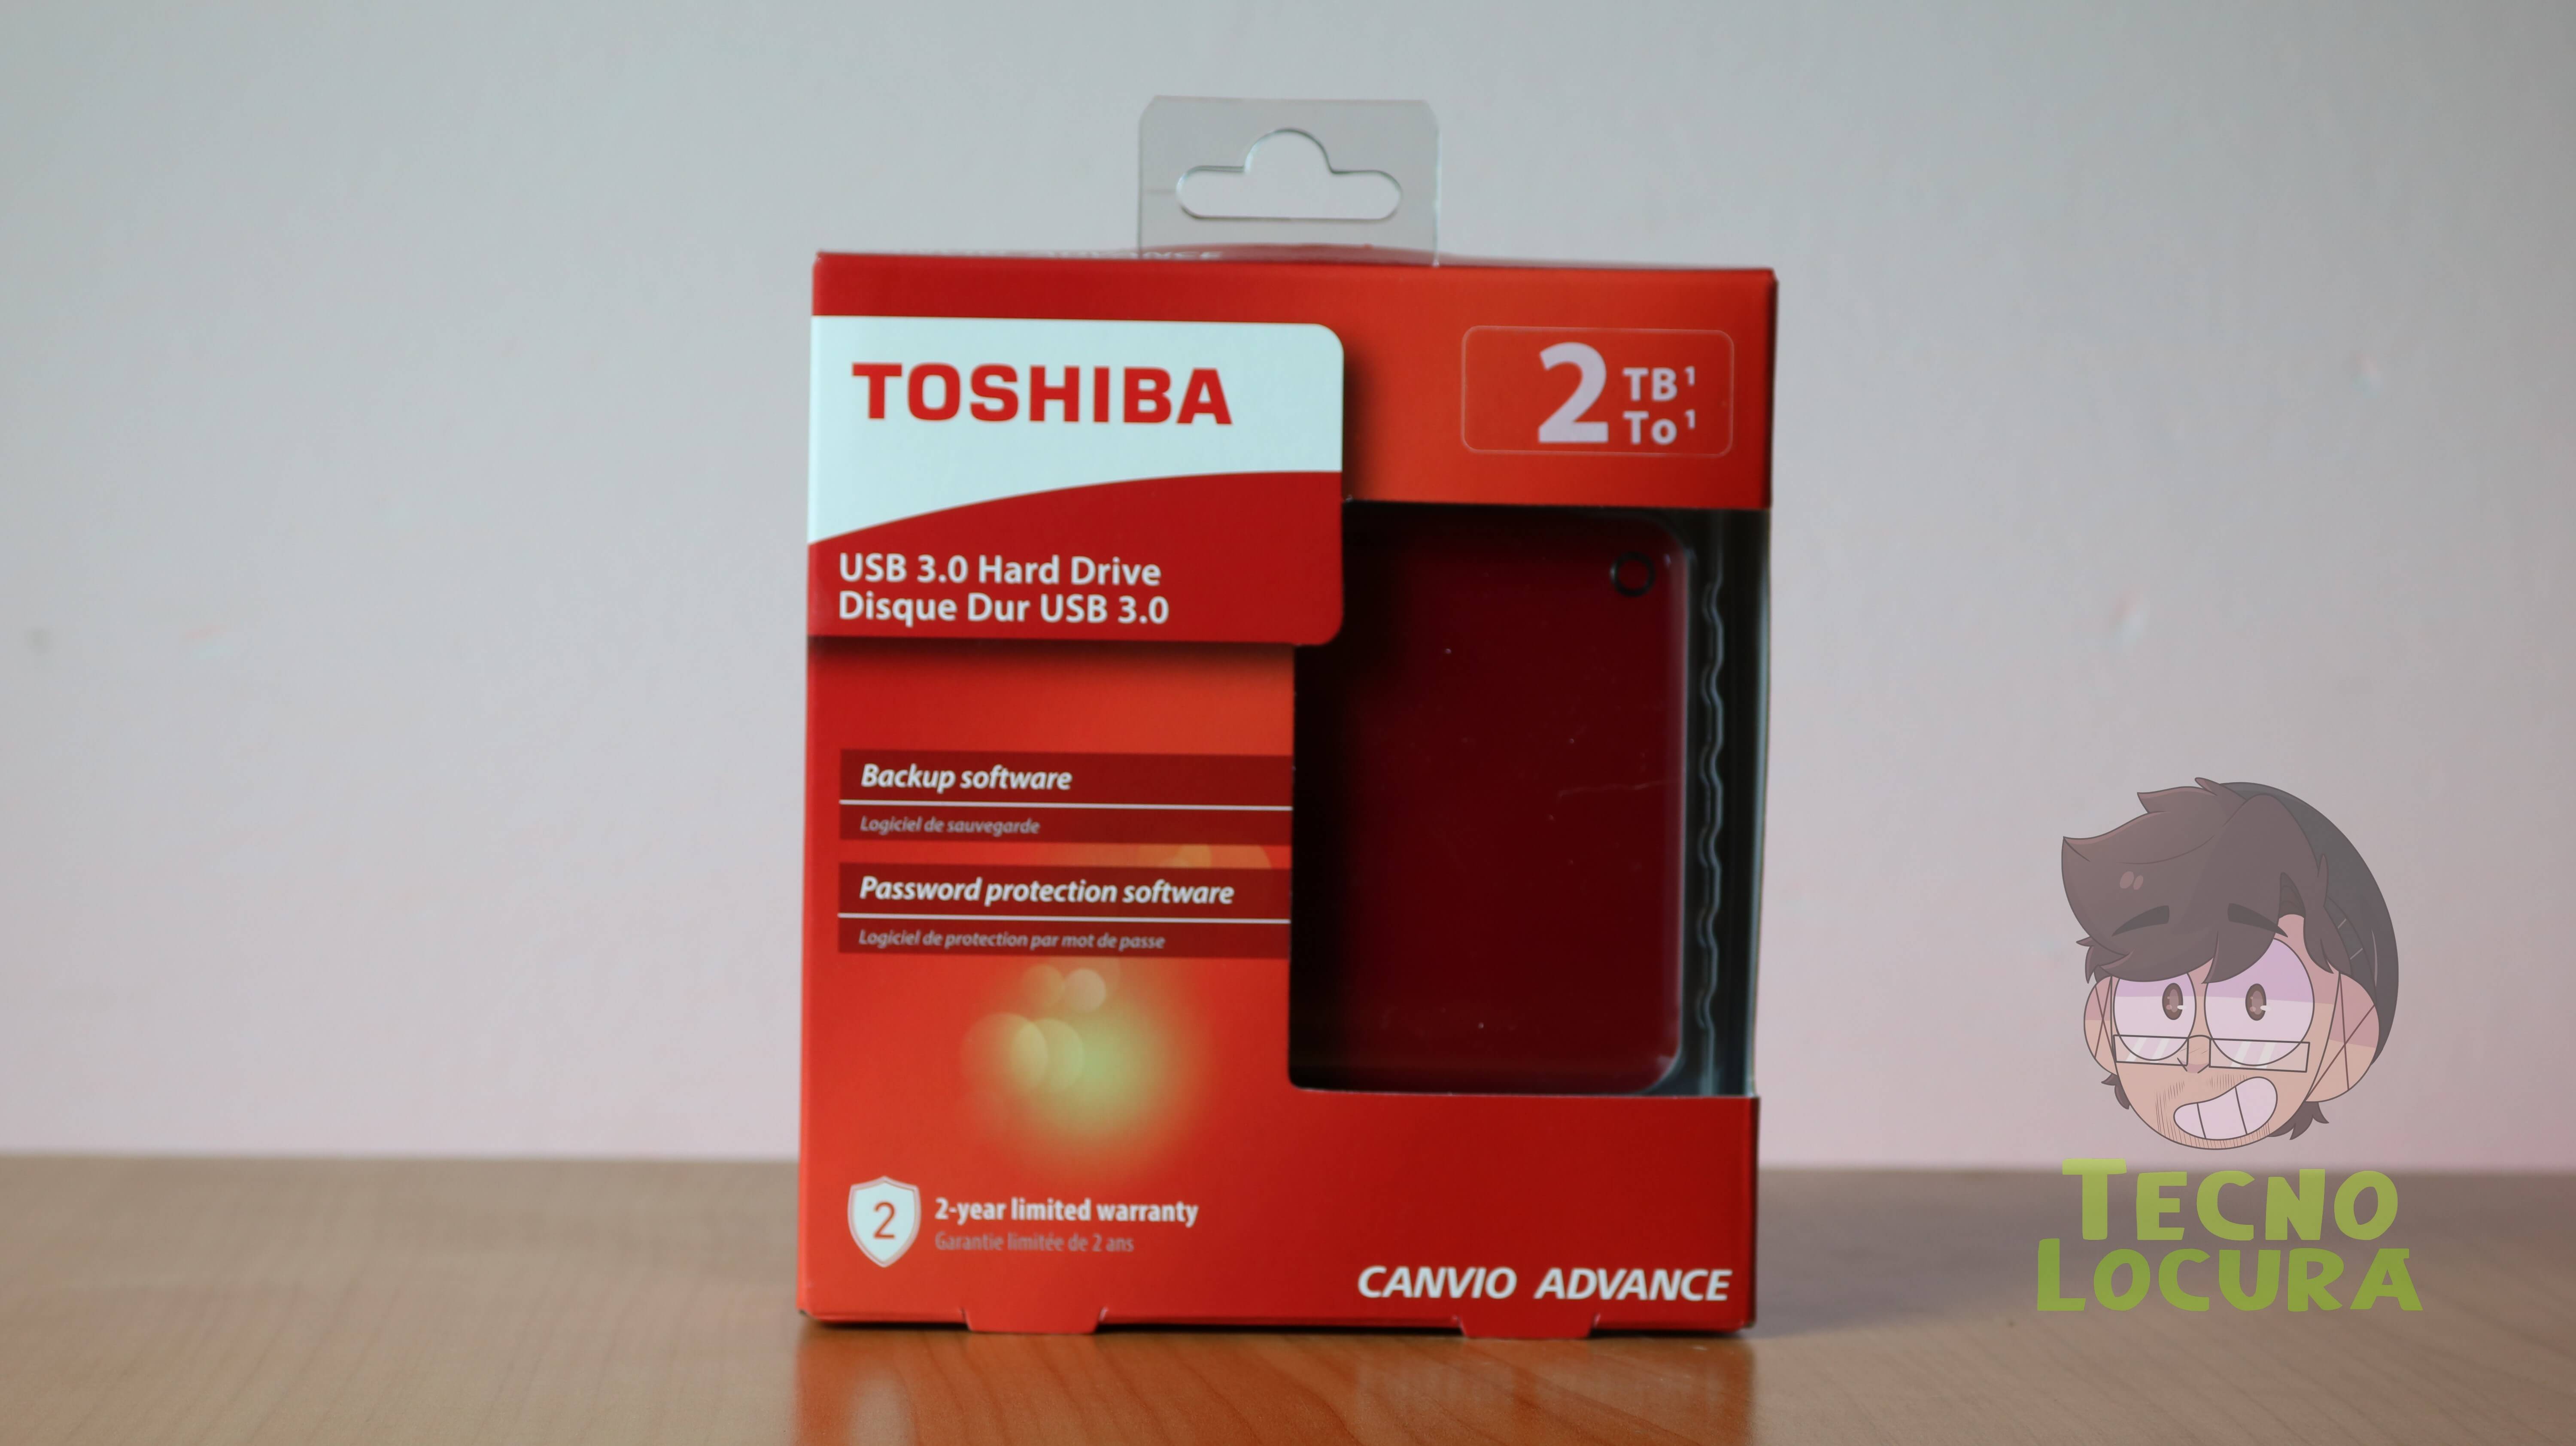 Toshiba Canvio Advance 2 TB